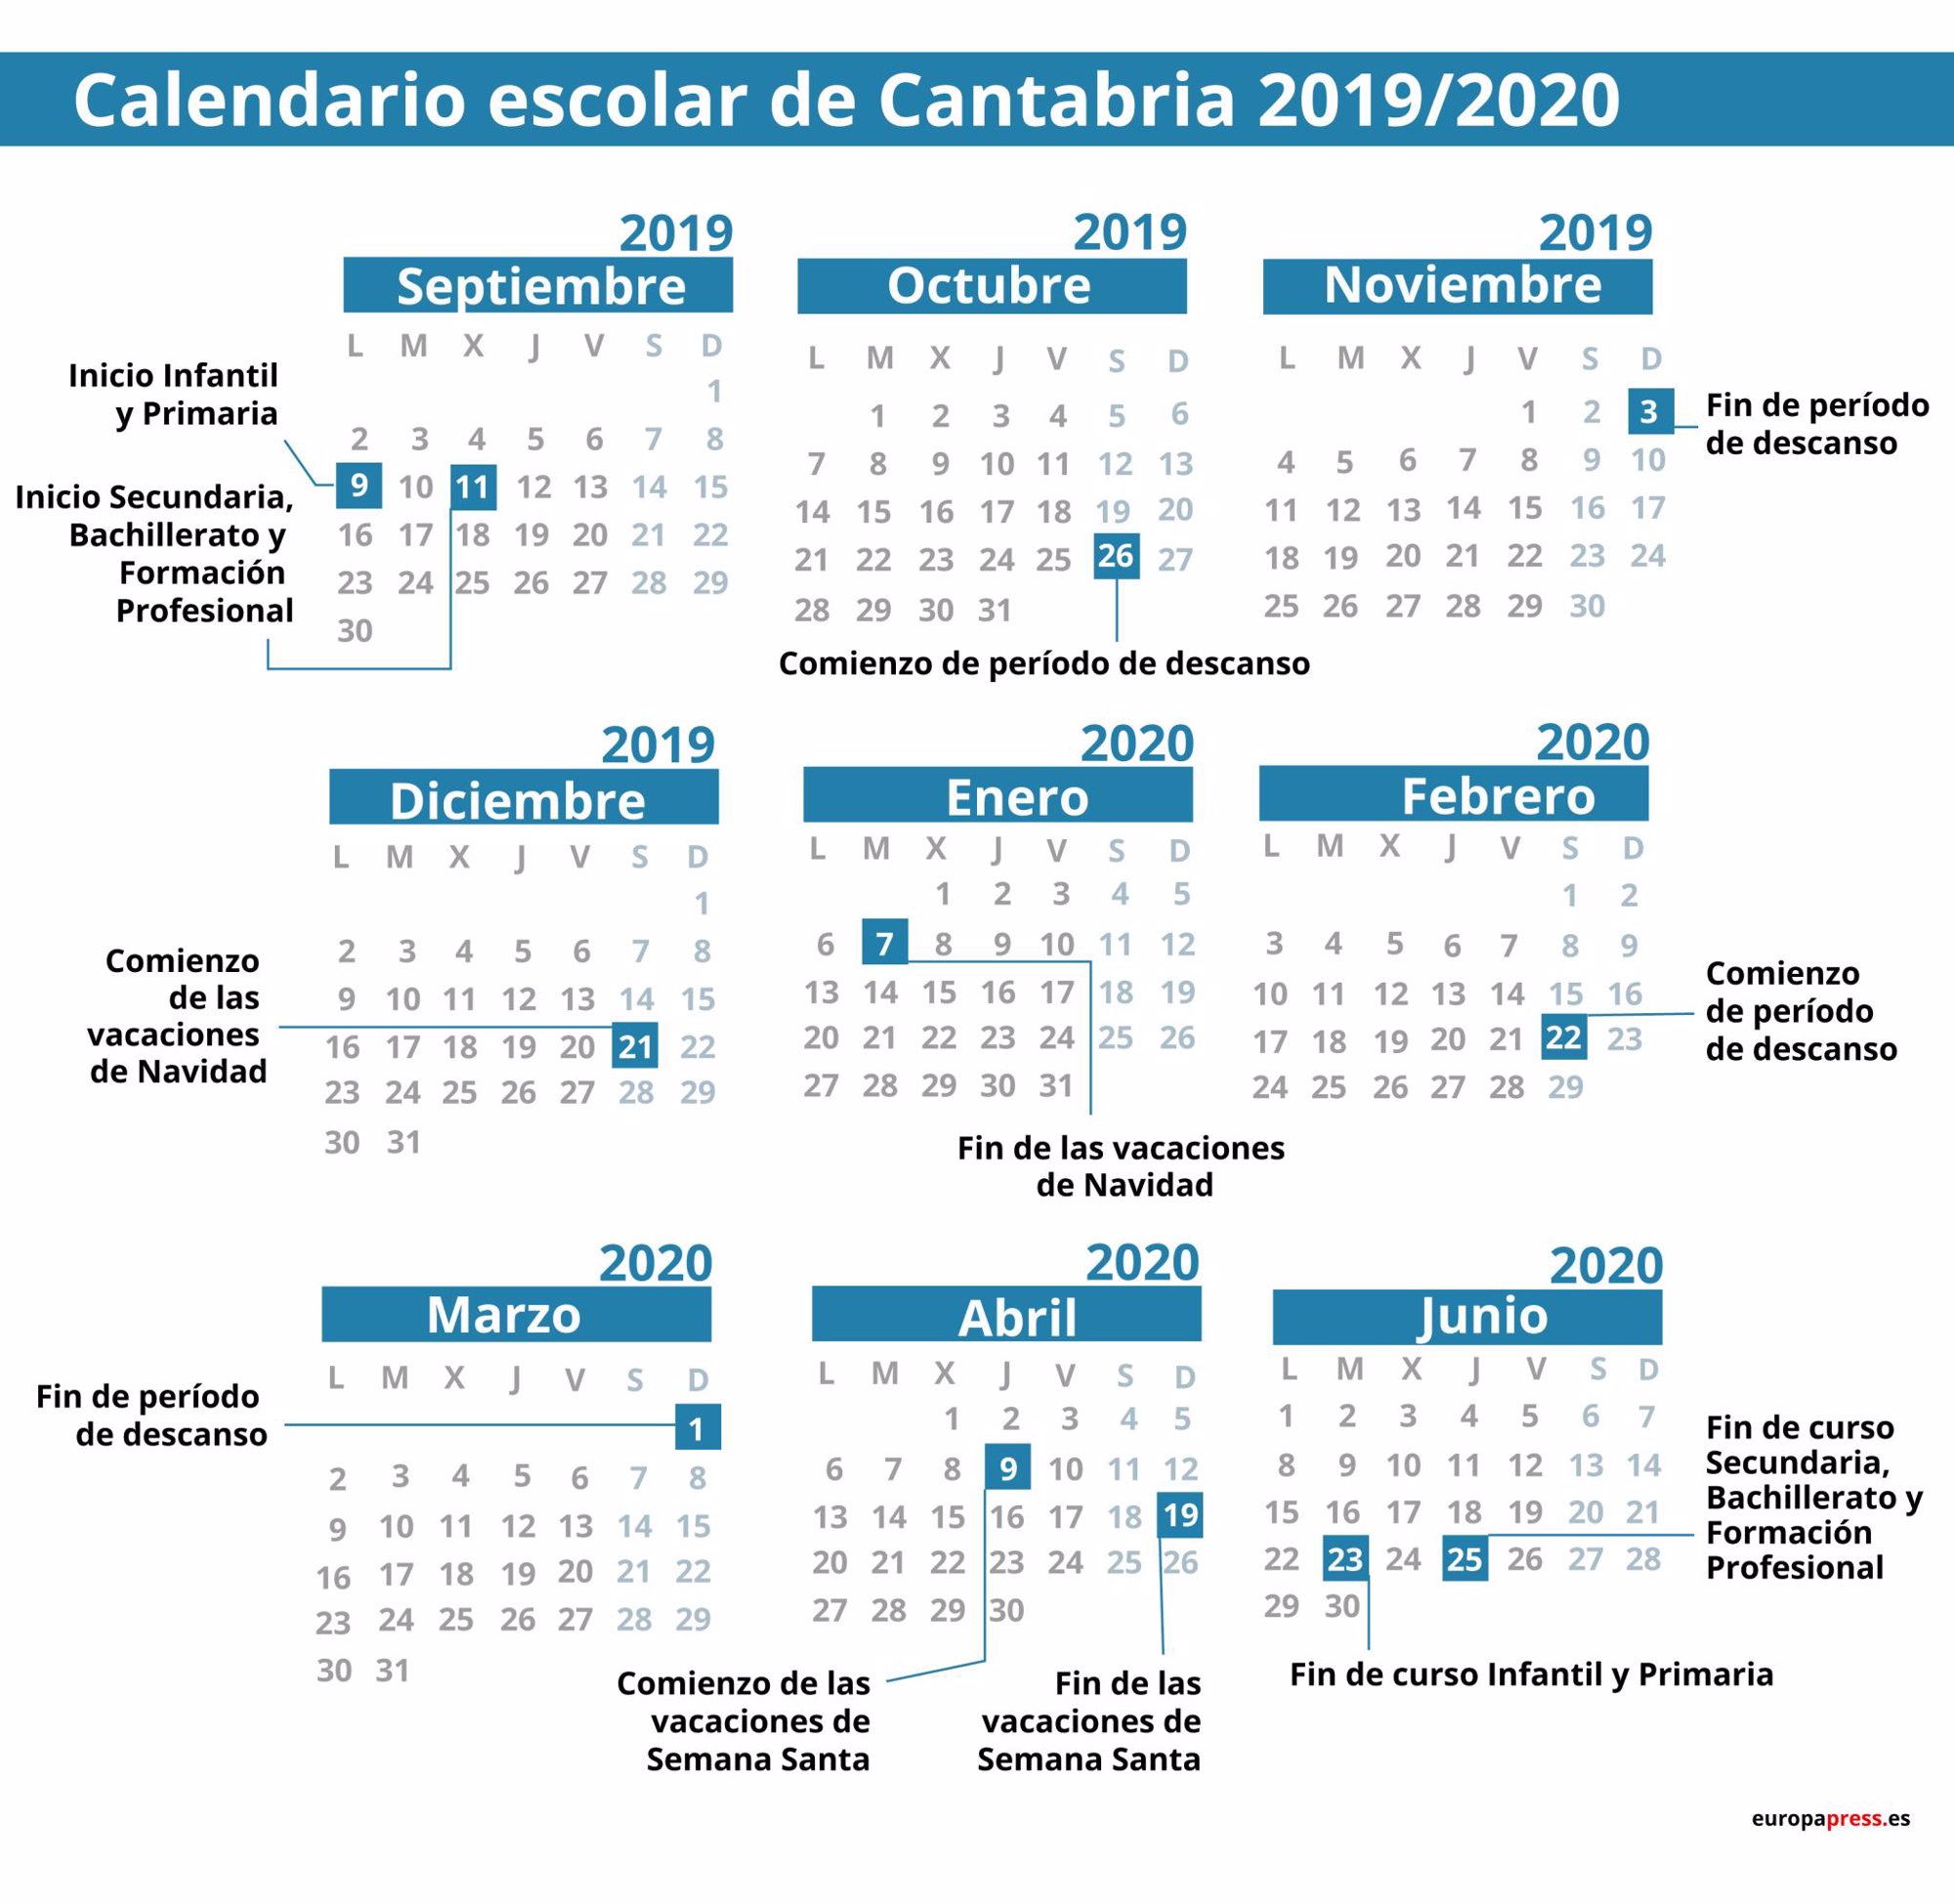 Calendario escolar en 2019/2020: Semana Santa y vacaciones de verano